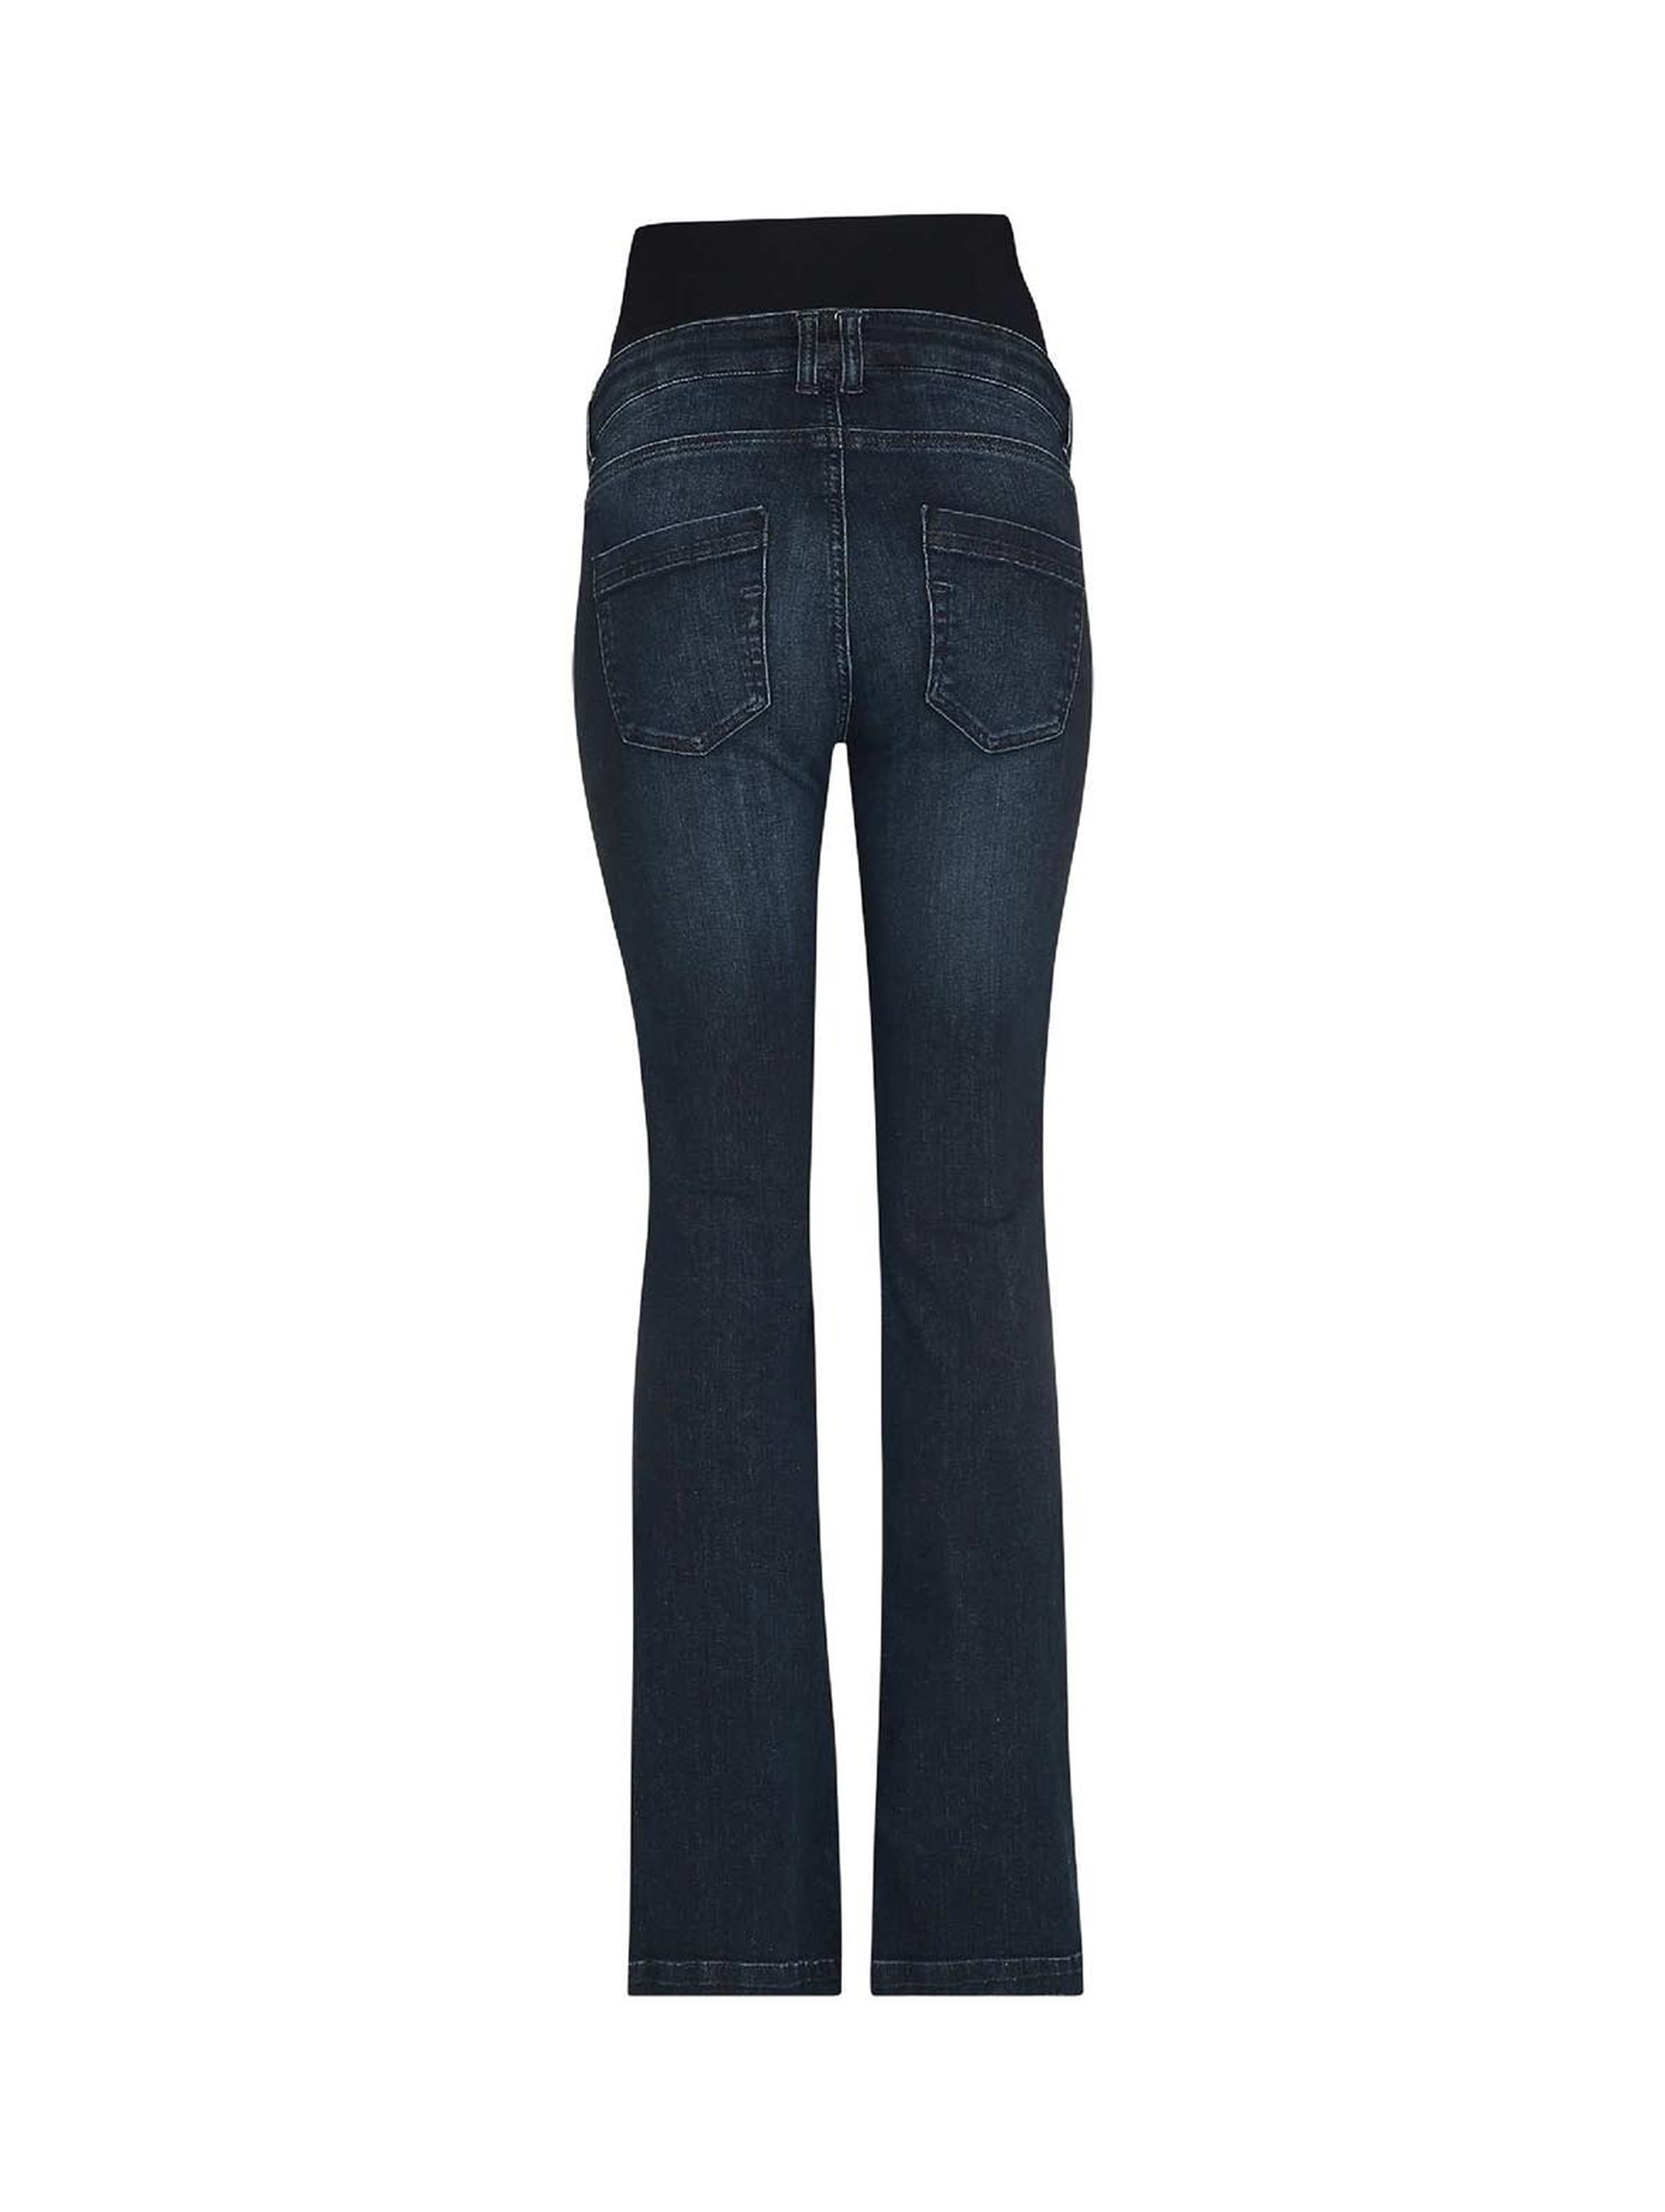 Spodnie jeansowe damskie, ciążowe, bootcut, niebieskie, Bellybutton